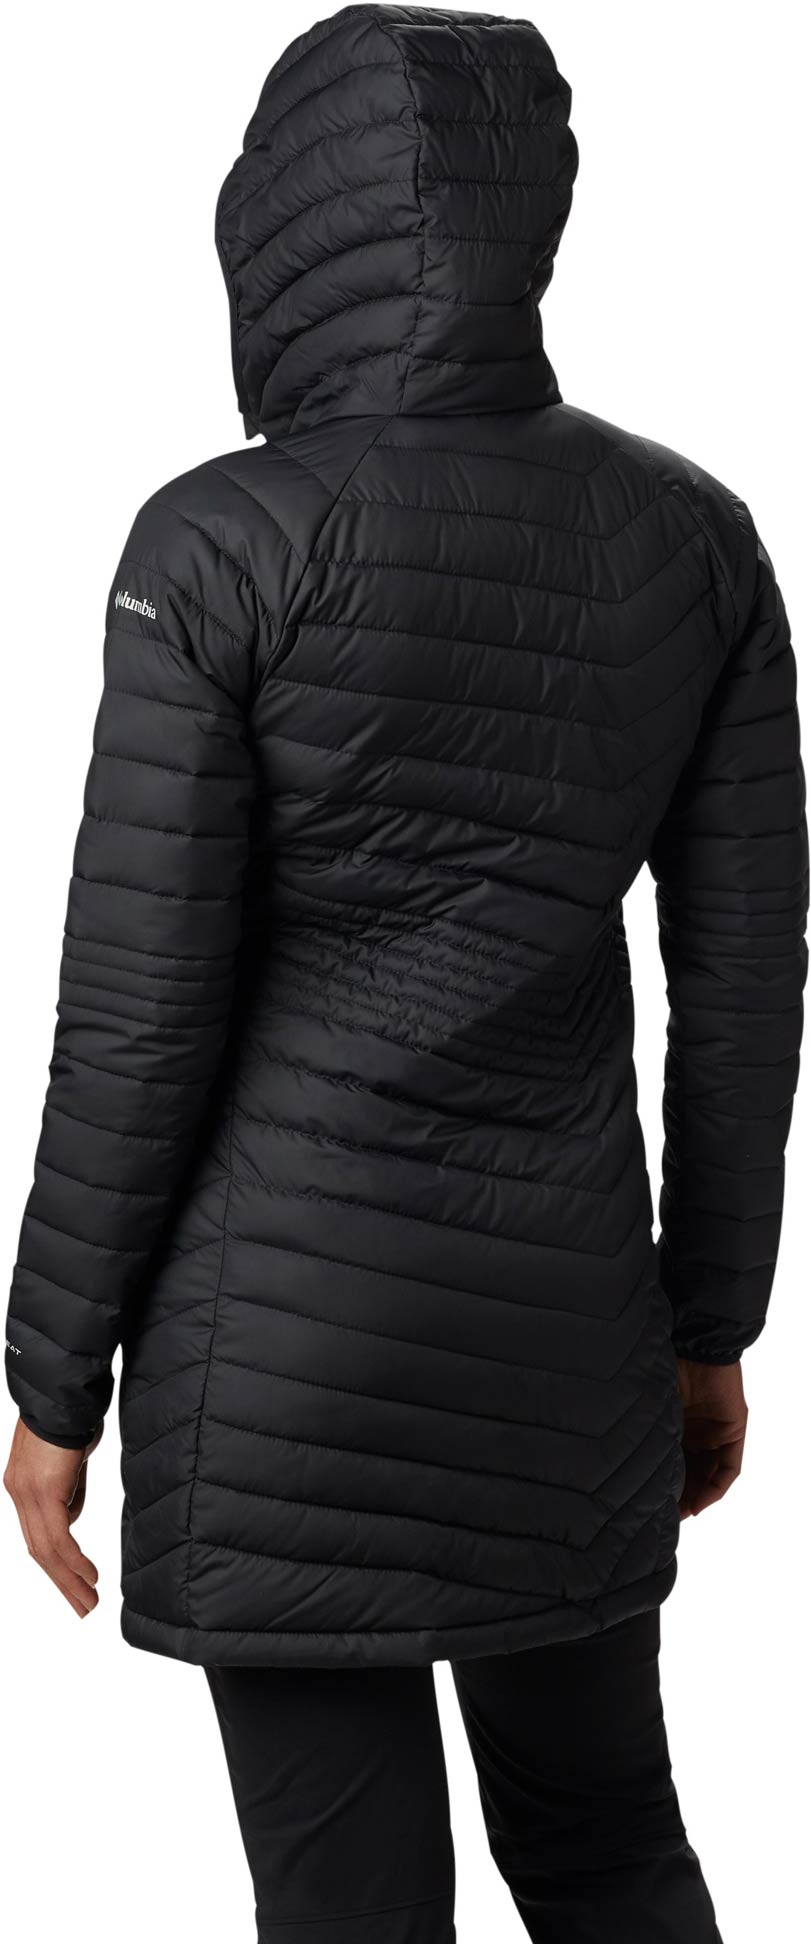 Women’s long winter jacket